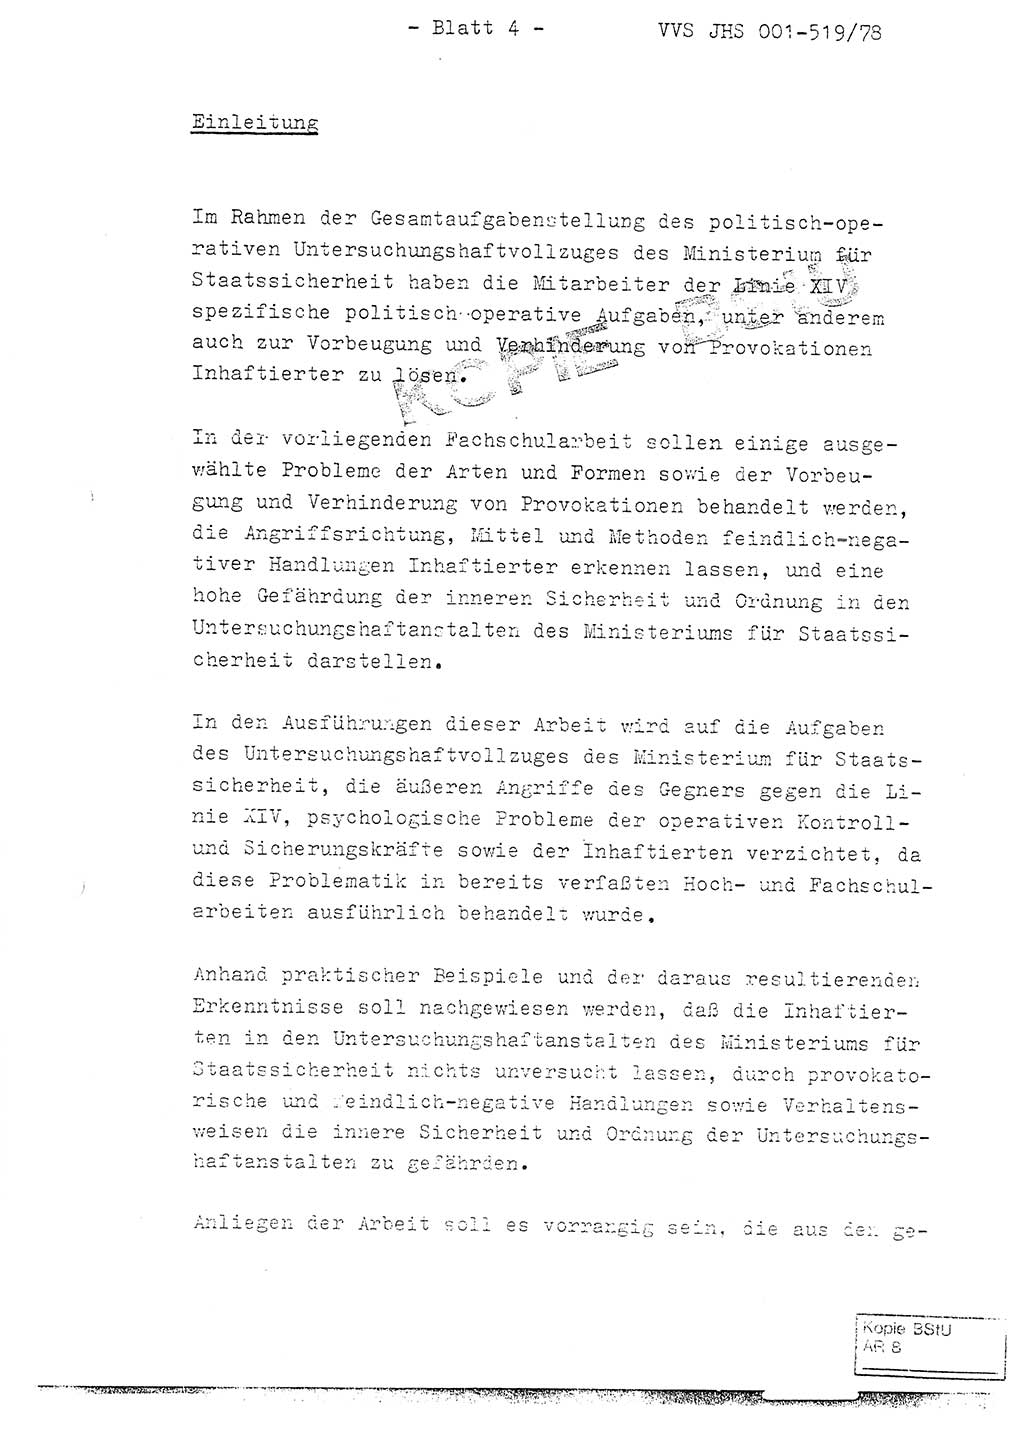 Fachschulabschlußarbeit Hauptmann Alfons Lützelberger (Abt. ⅩⅣ), Ministerium für Staatssicherheit (MfS) [Deutsche Demokratische Republik (DDR)], Juristische Hochschule (JHS), Vertrauliche Verschlußsache (VVS) 001-519/78, Potsdam 1978, Blatt 4 (FS-Abschl.-Arb. MfS DDR JHS VVS 001-519/78 1978, Bl. 4)